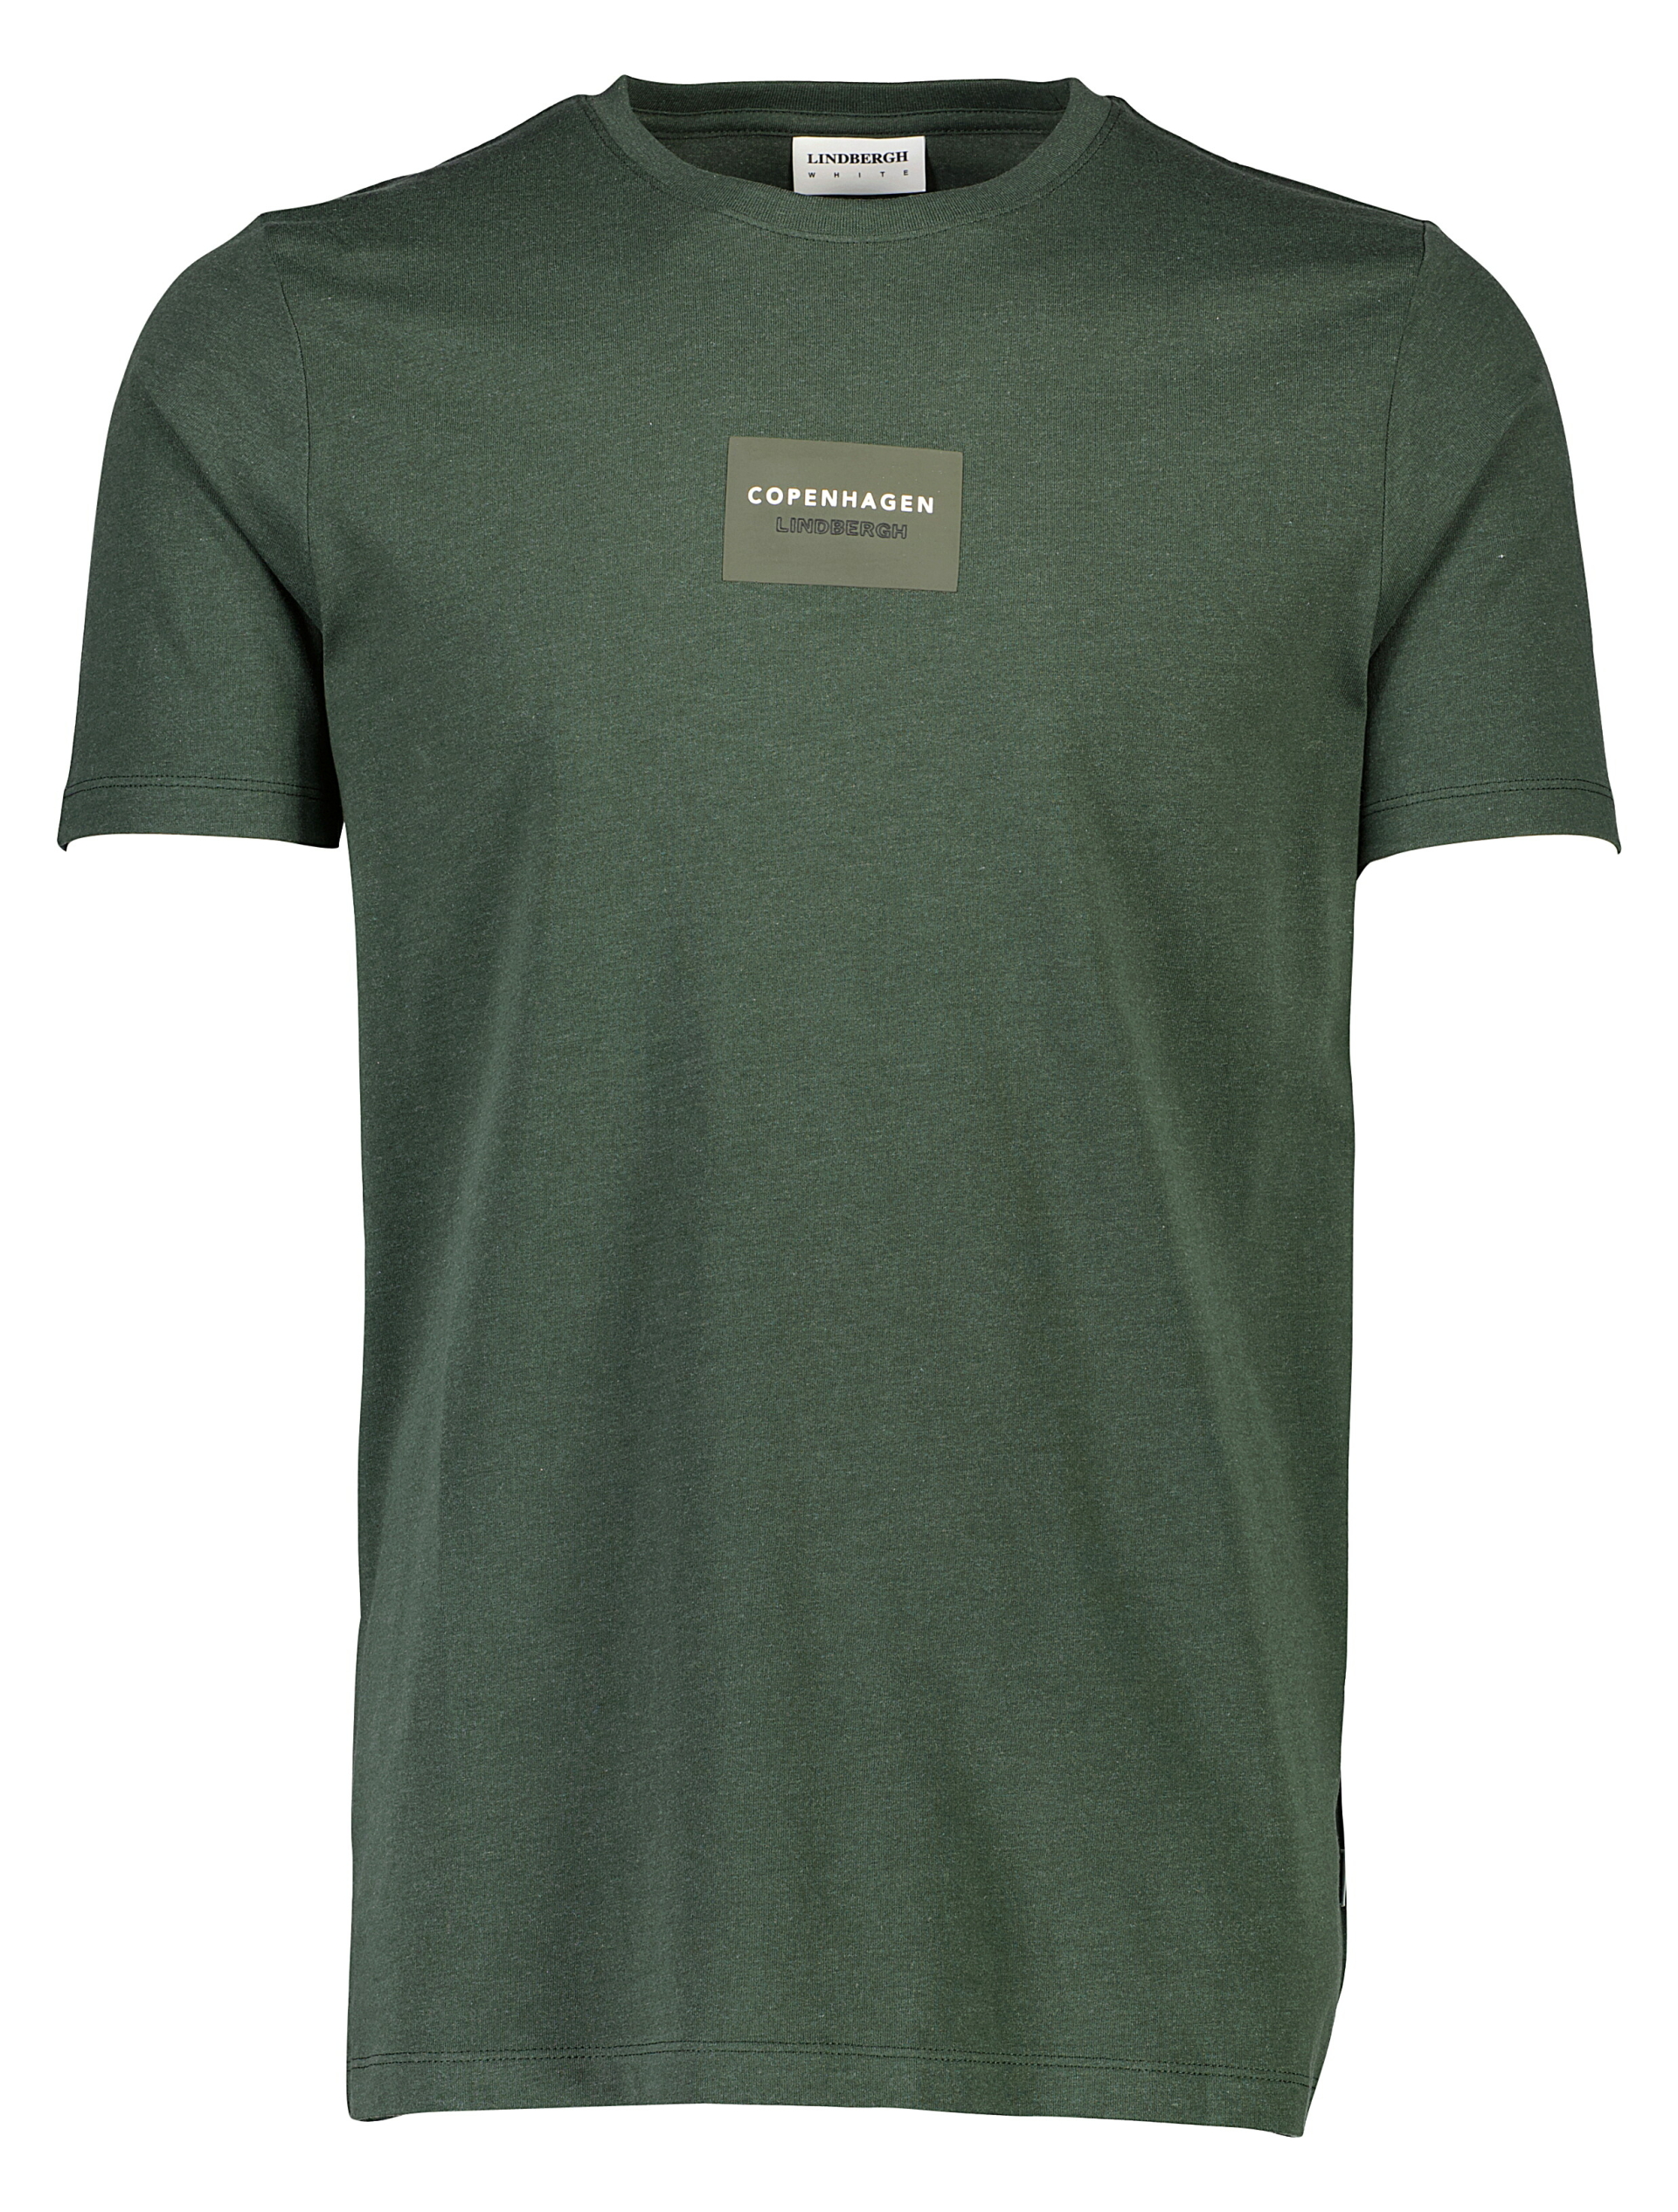 Lindbergh T-shirt grøn / green mel